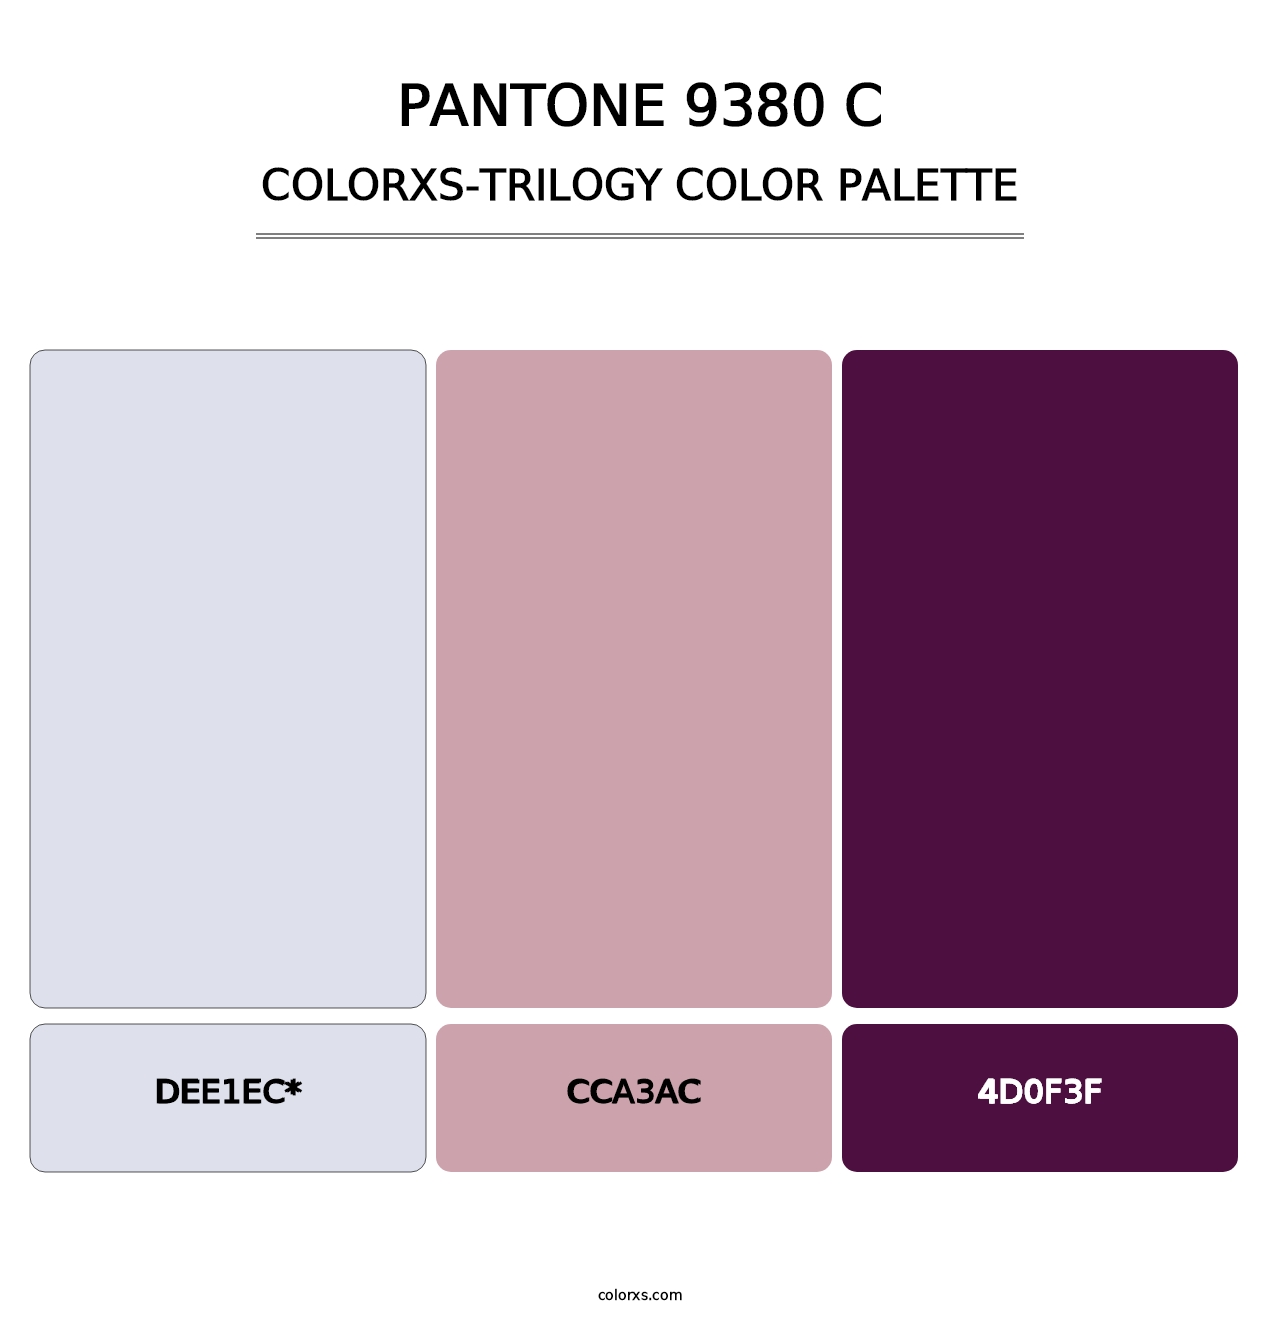 PANTONE 9380 C - Colorxs Trilogy Palette